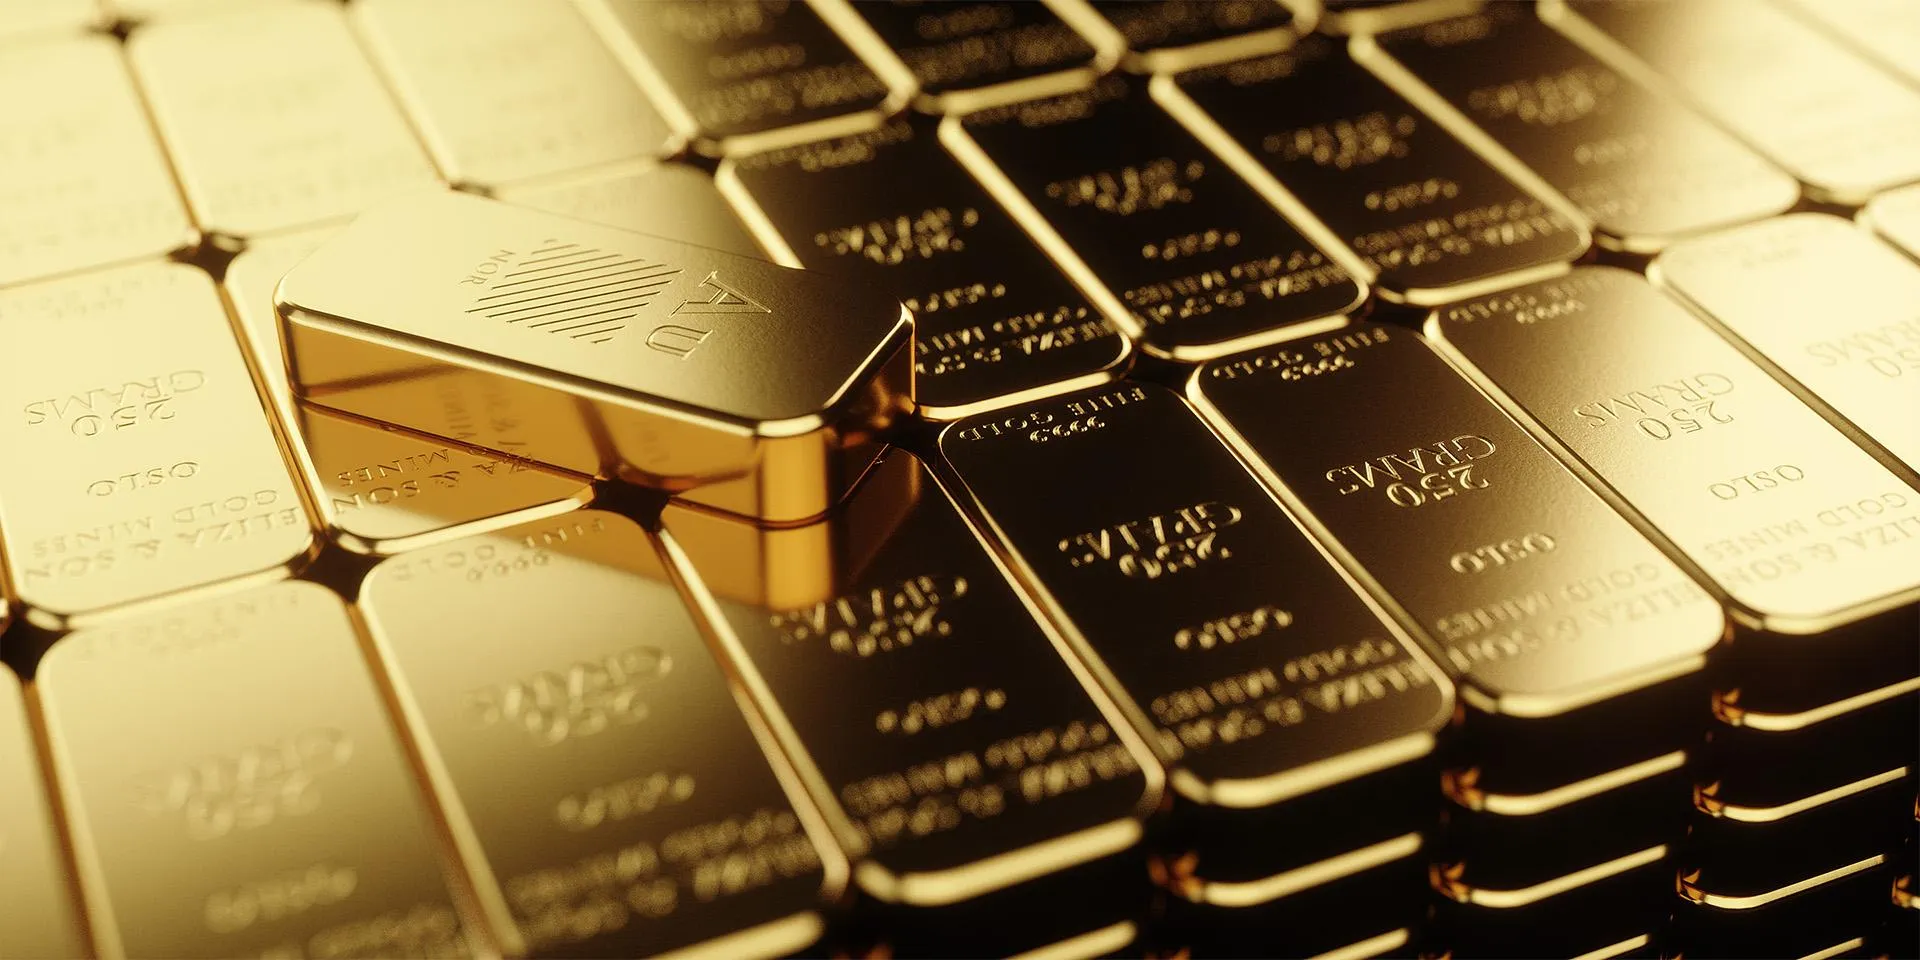 Експерти радять інвестувати гроші у банківське золото